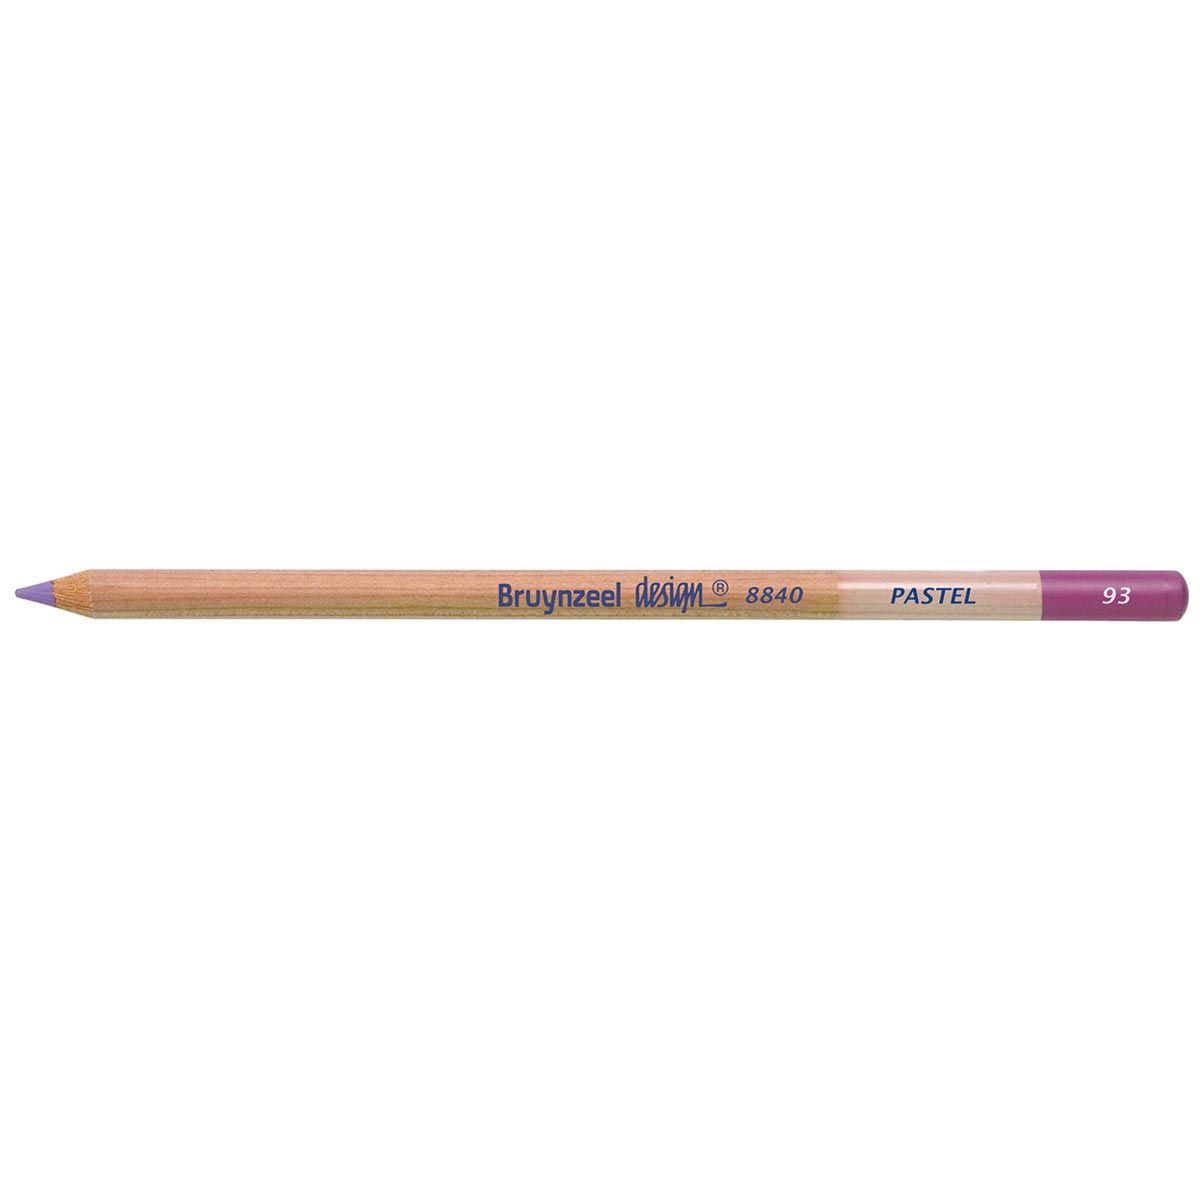 Bruynzeel Design Pastel Pencil - Light Blue Violet 93